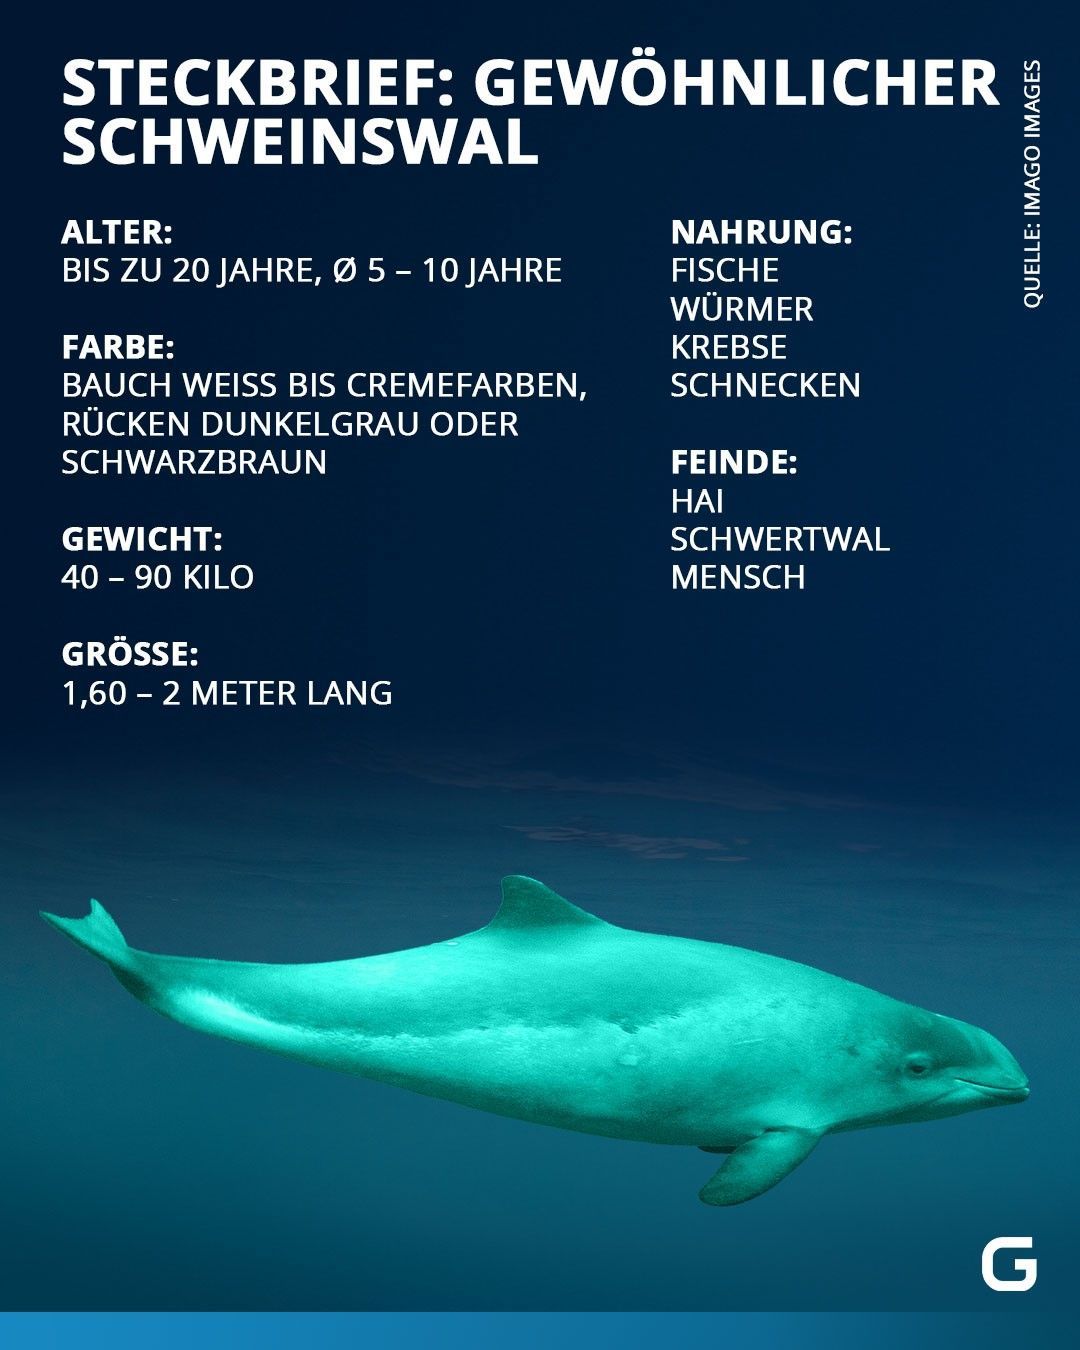 Schweinswal Steckbrief: Alter, Farbe, Gewicht, Größe, Nahrung und Feinde. 